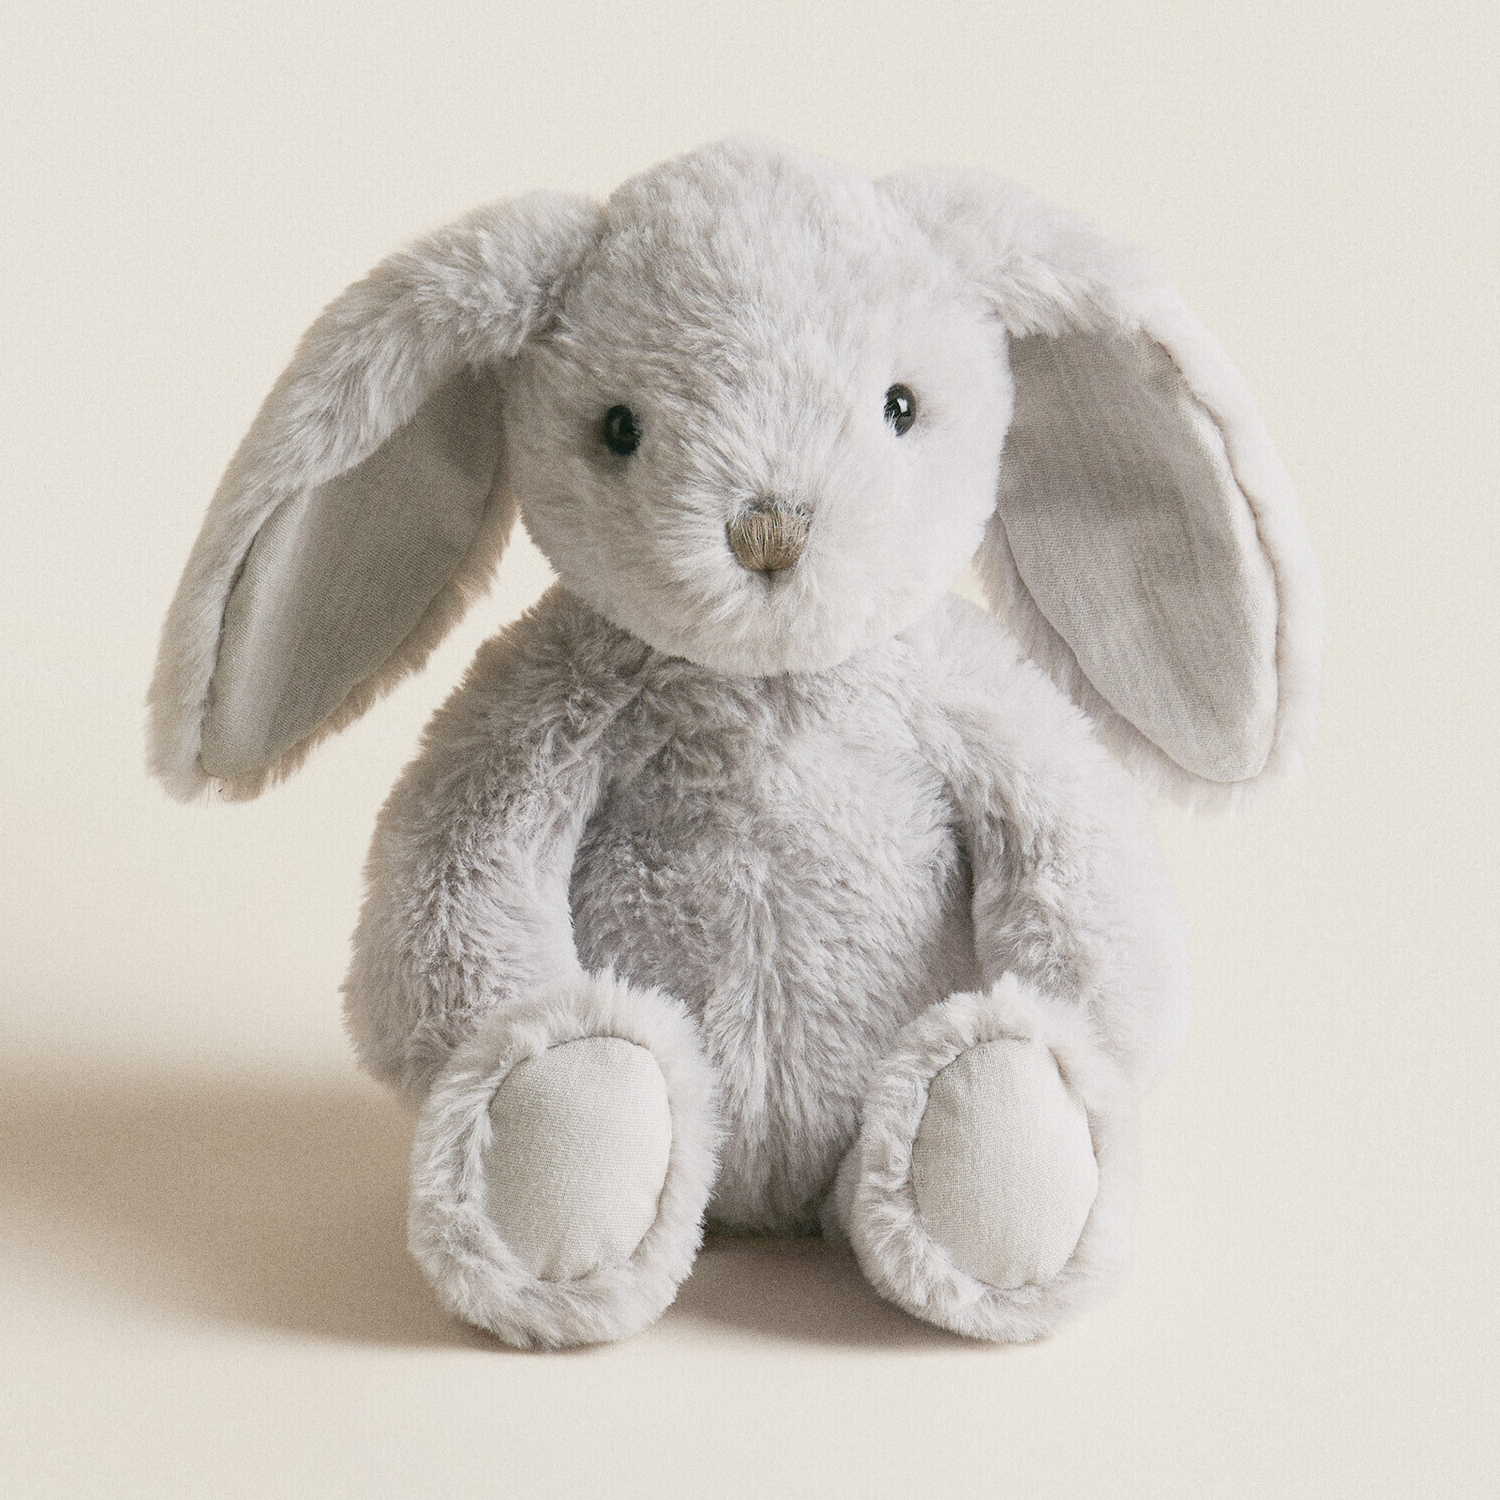 Мягкая игрушка кролик Zara Home, серо-голубой персонализированная мягкая игрушка кролик на заказ длинные уши кролик плюшевый новый детский подарок кролик пасхальная корзина шприцы